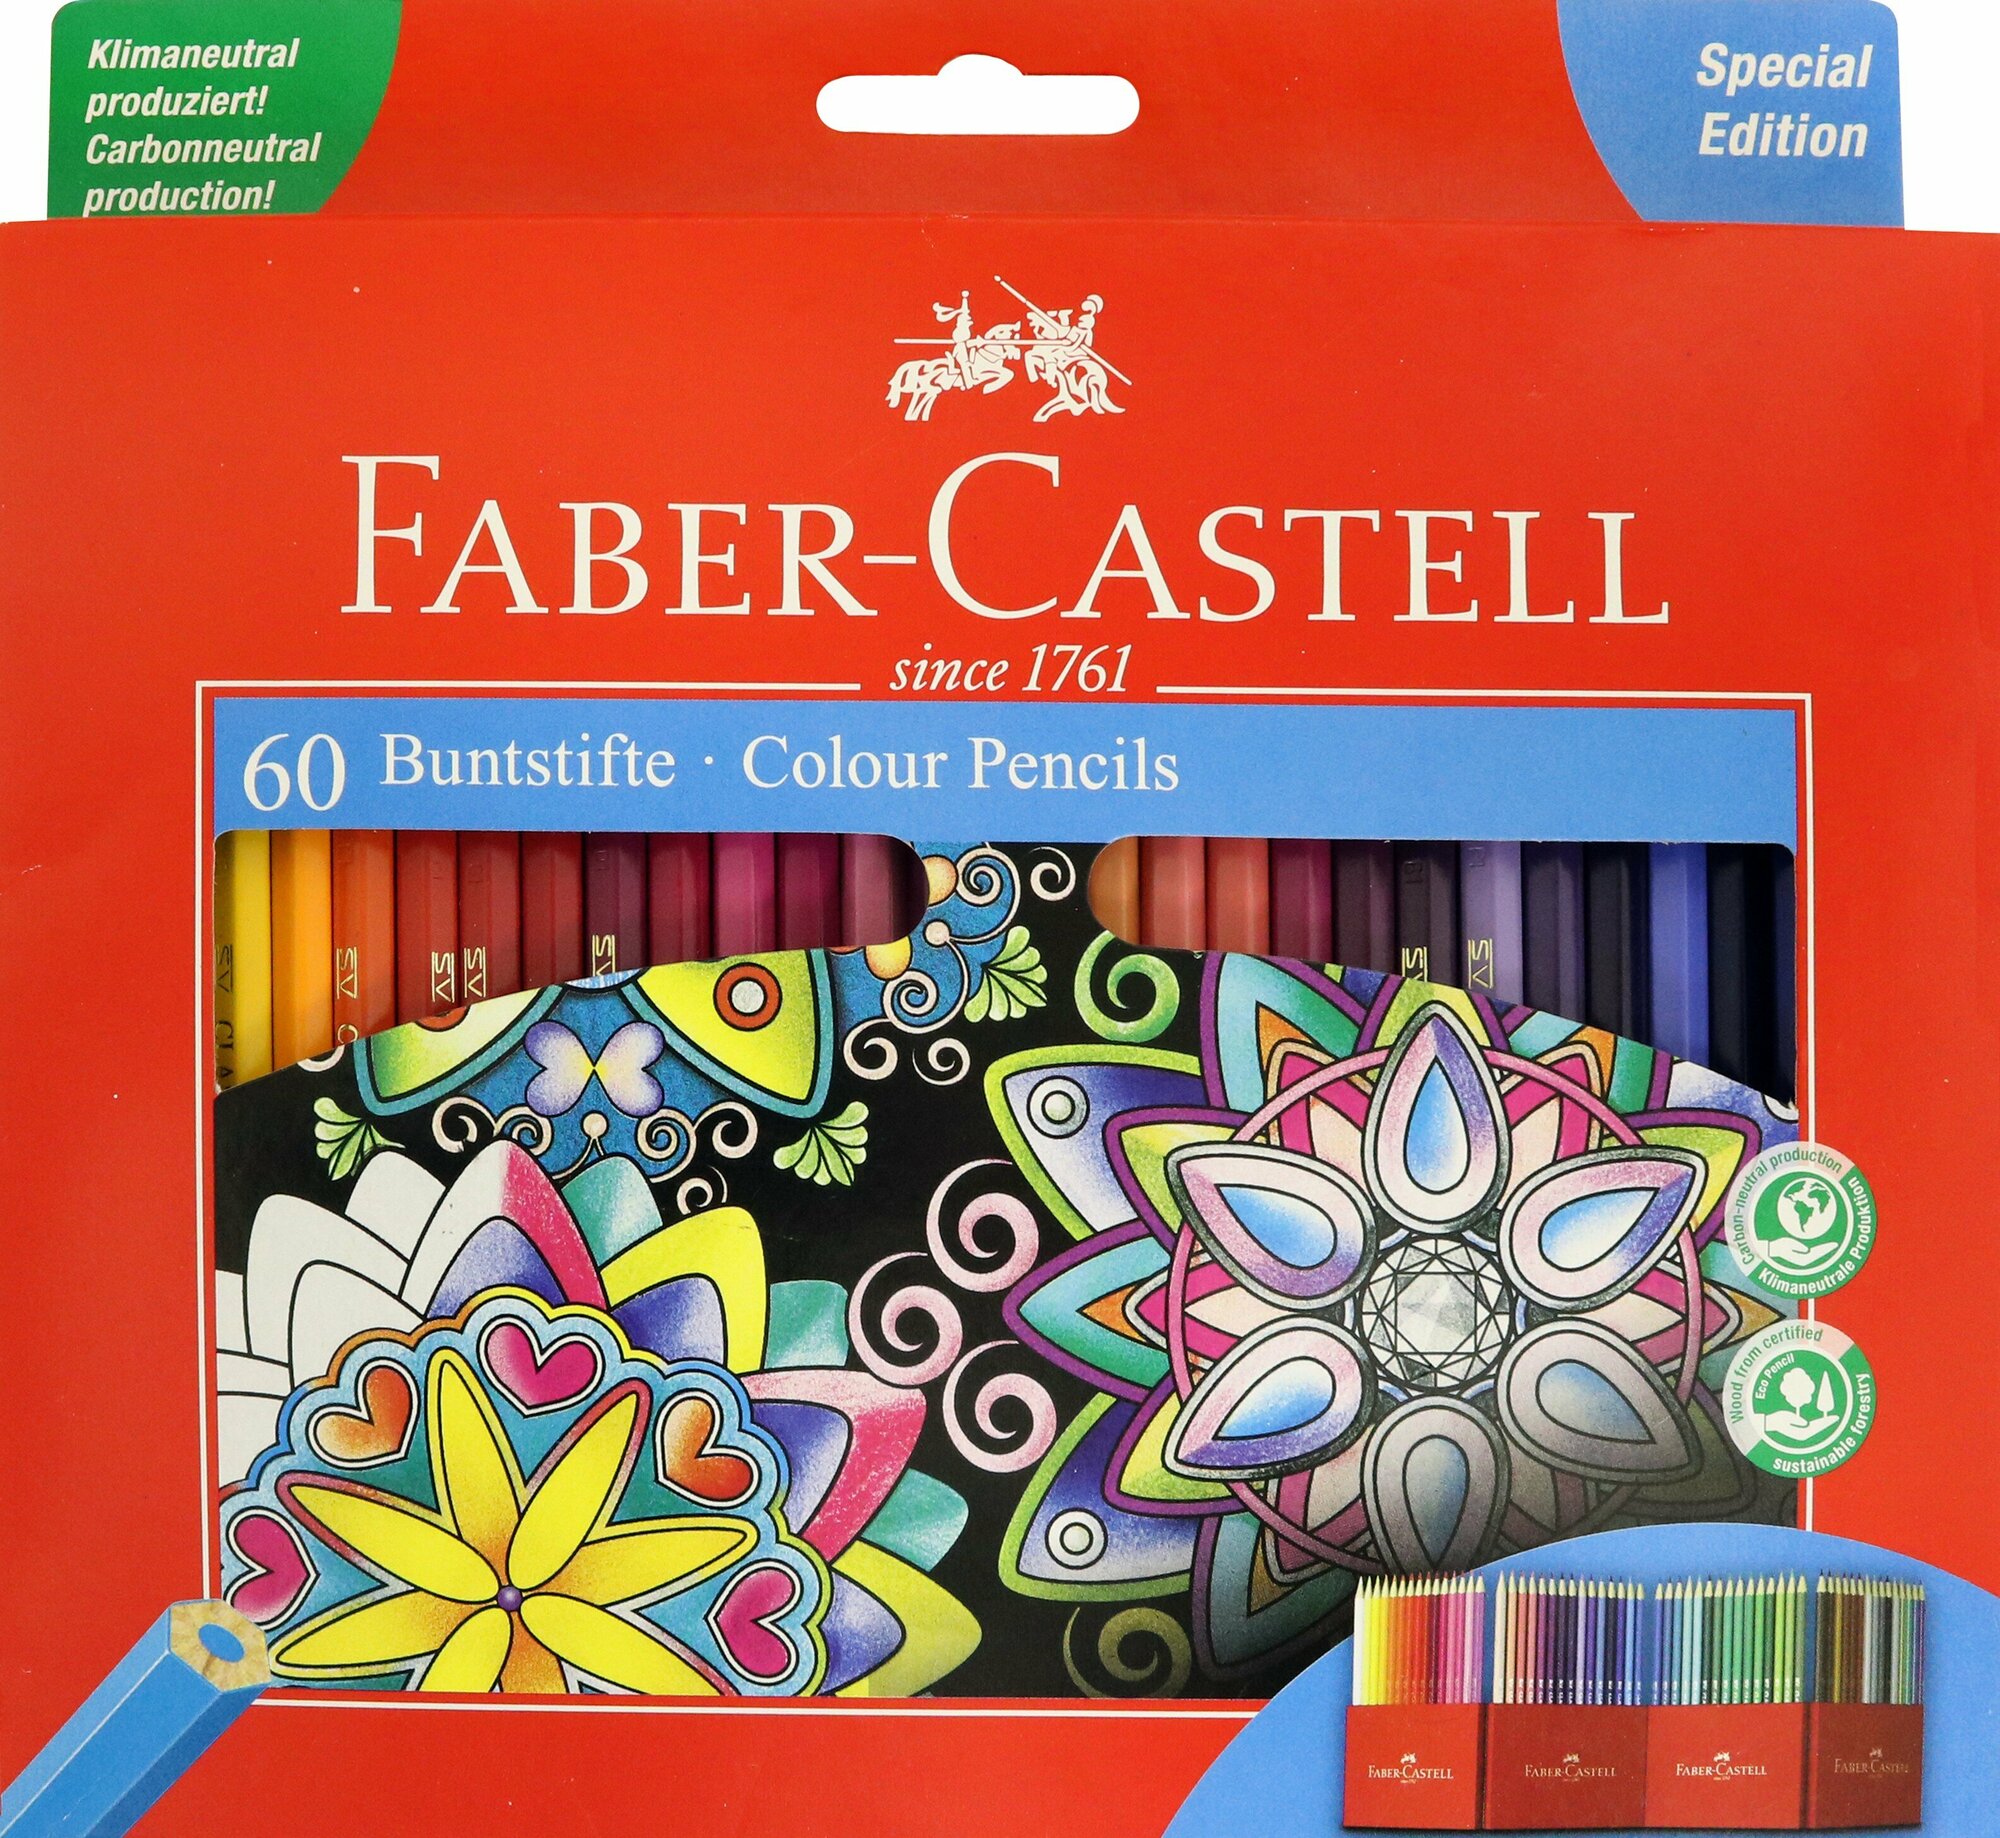 Карандаши цветные Faber-Castell Замок набор цветов в подарочной картонной коробке 60 шт. - фото №20